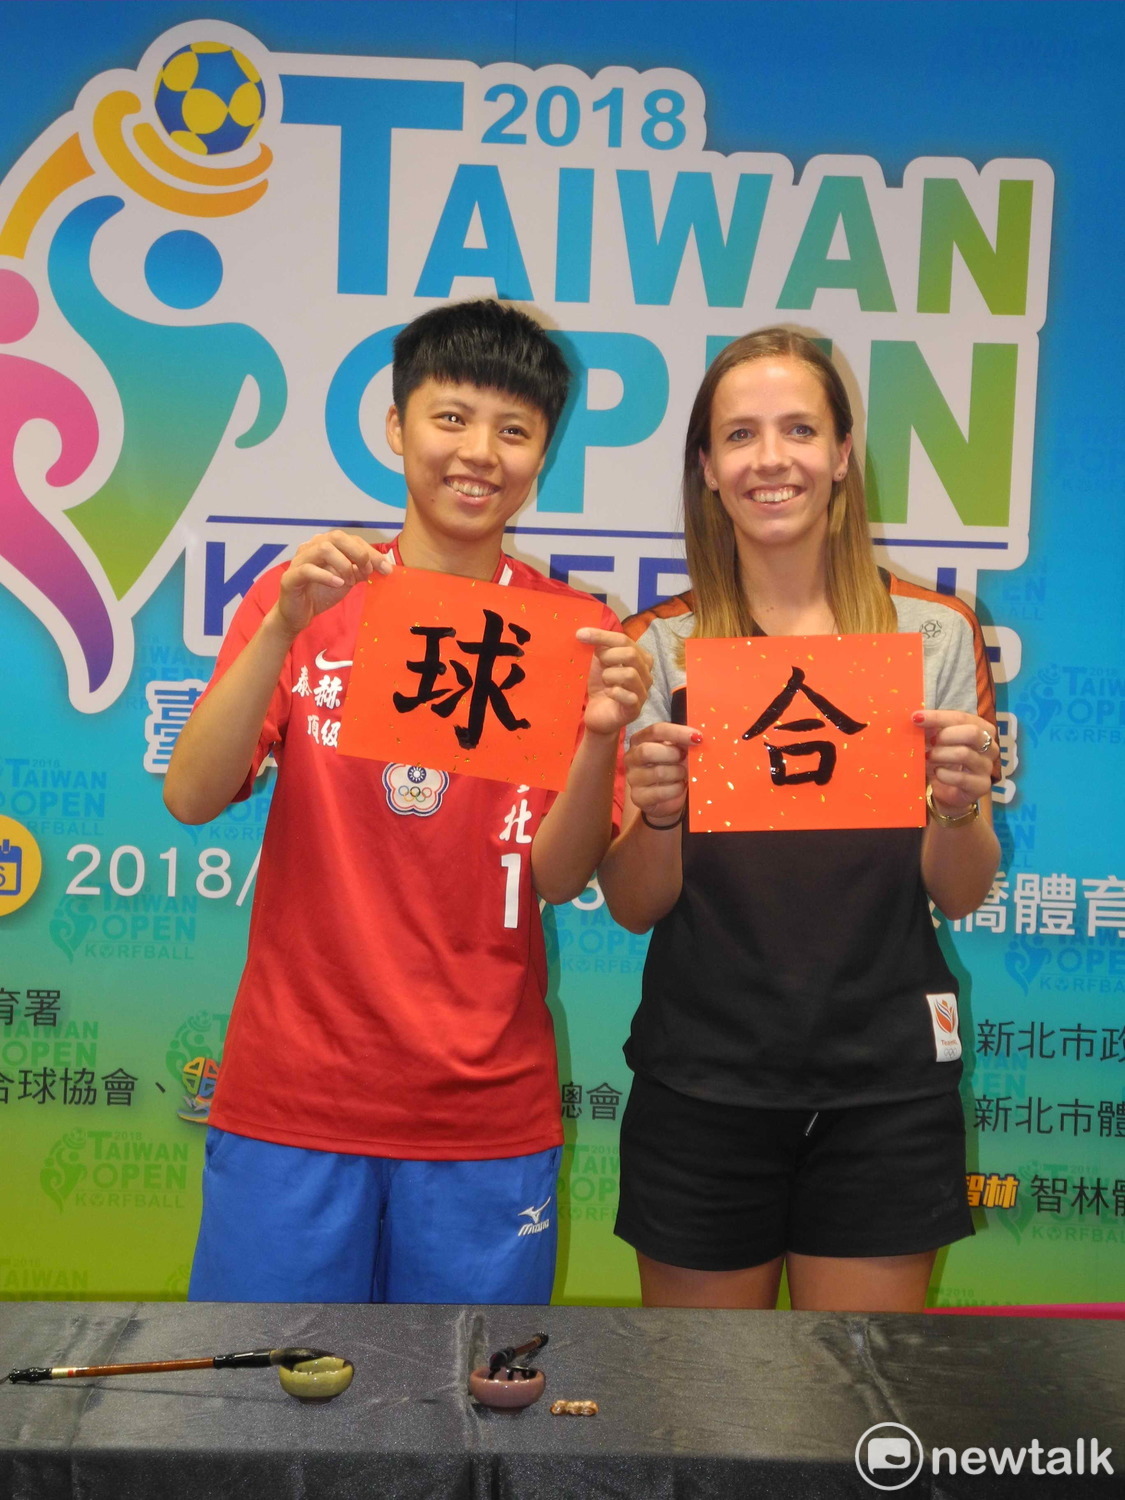 「2018台灣國際合球公開賽」將於6月26日至30日在新北市立板橋體育館登場，也是U21世界合球錦標賽、亞洲暨大洋洲合球錦標賽的前哨戰。 